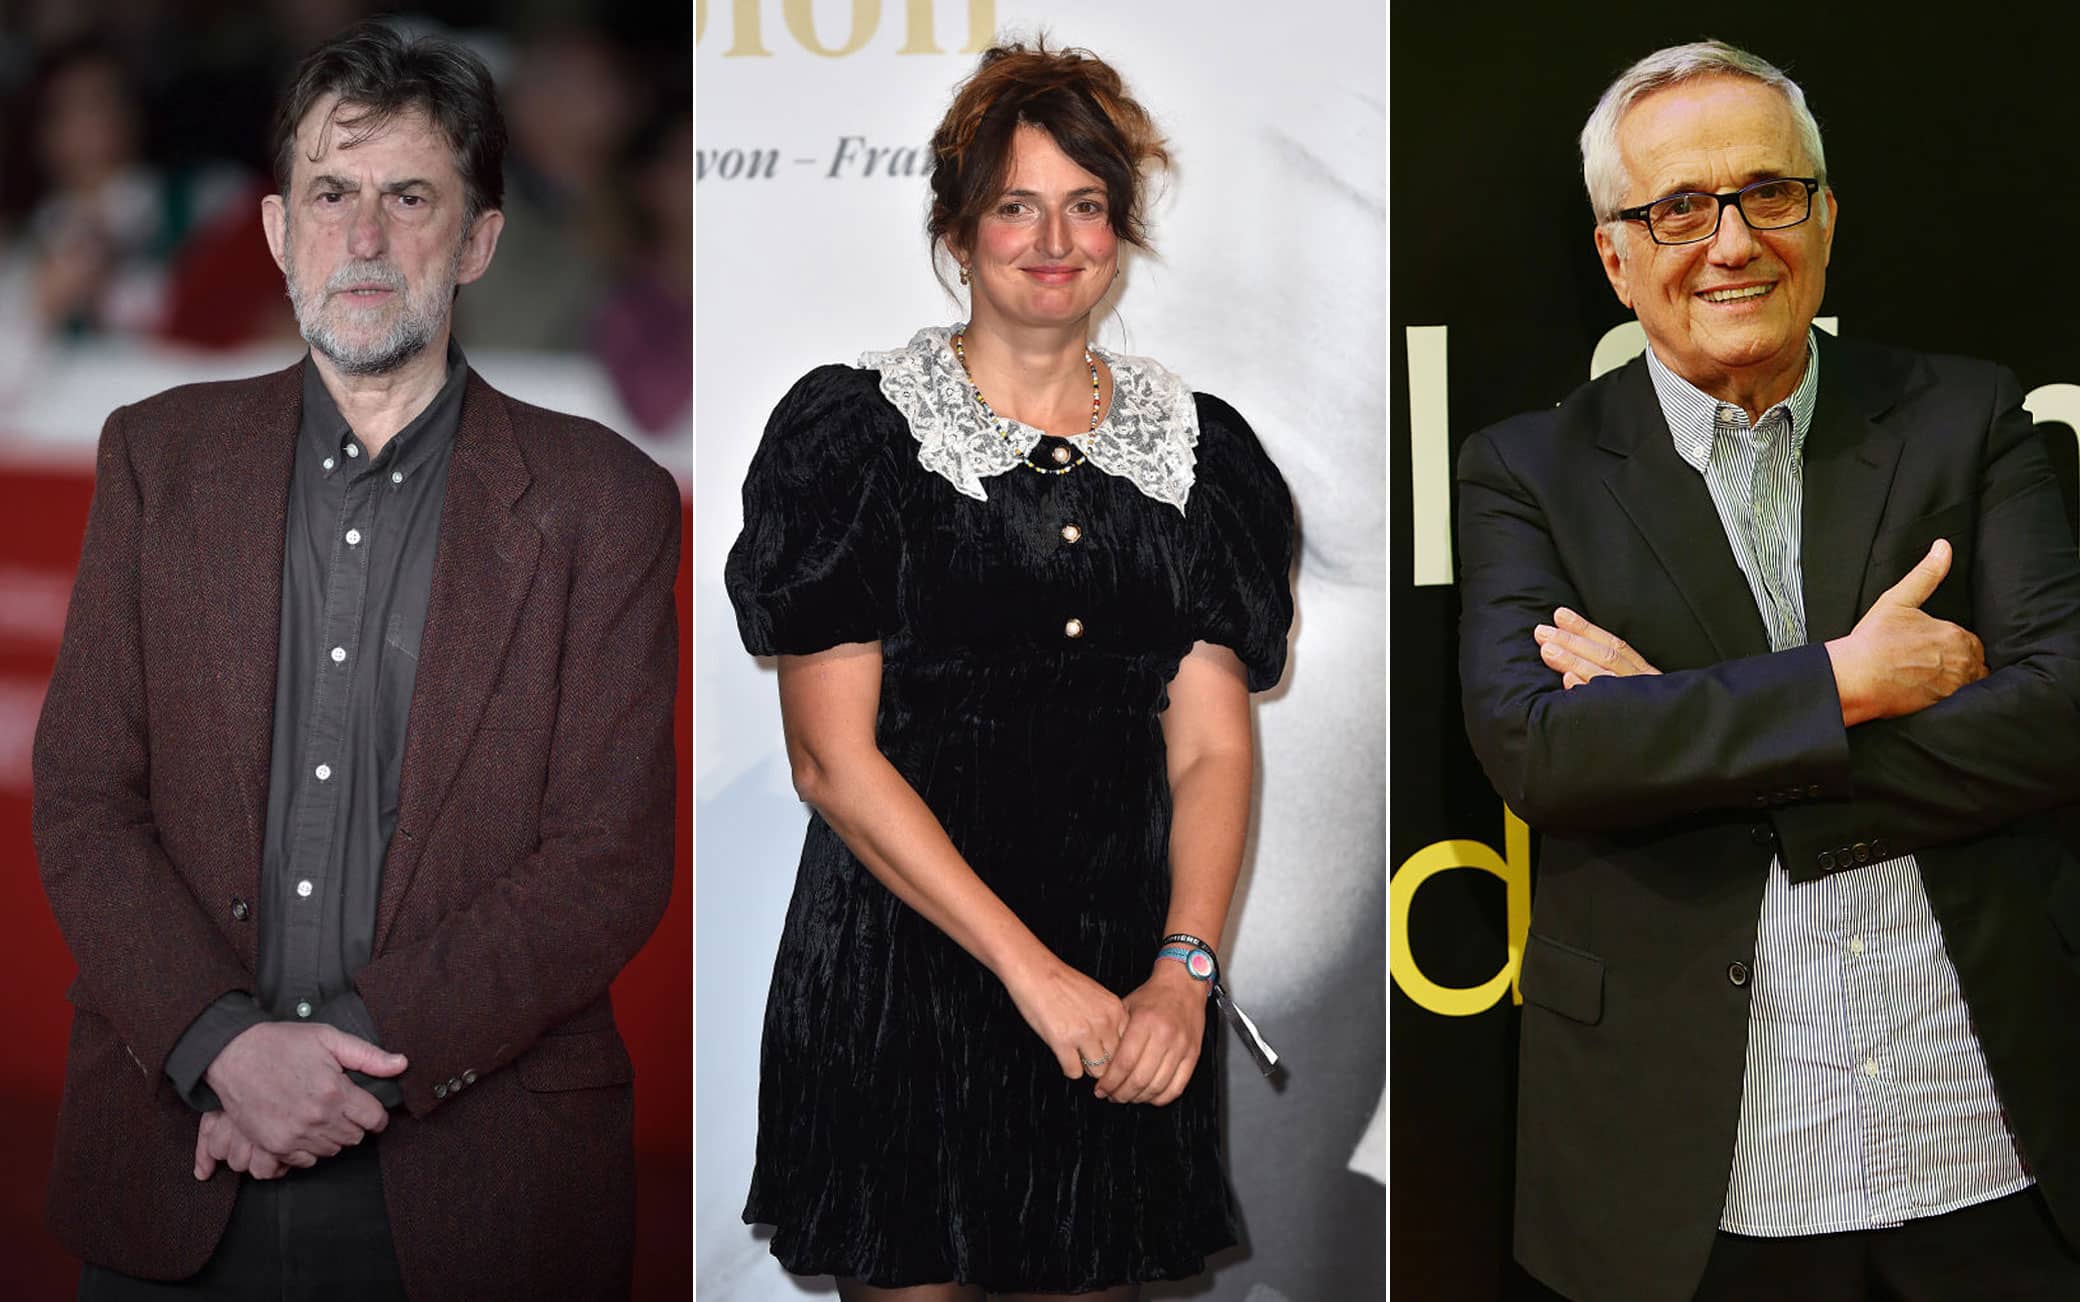 Festival di Cannes 2023, Moretti, Rohrwacher e Bellocchio in concorso | Sky  TG24